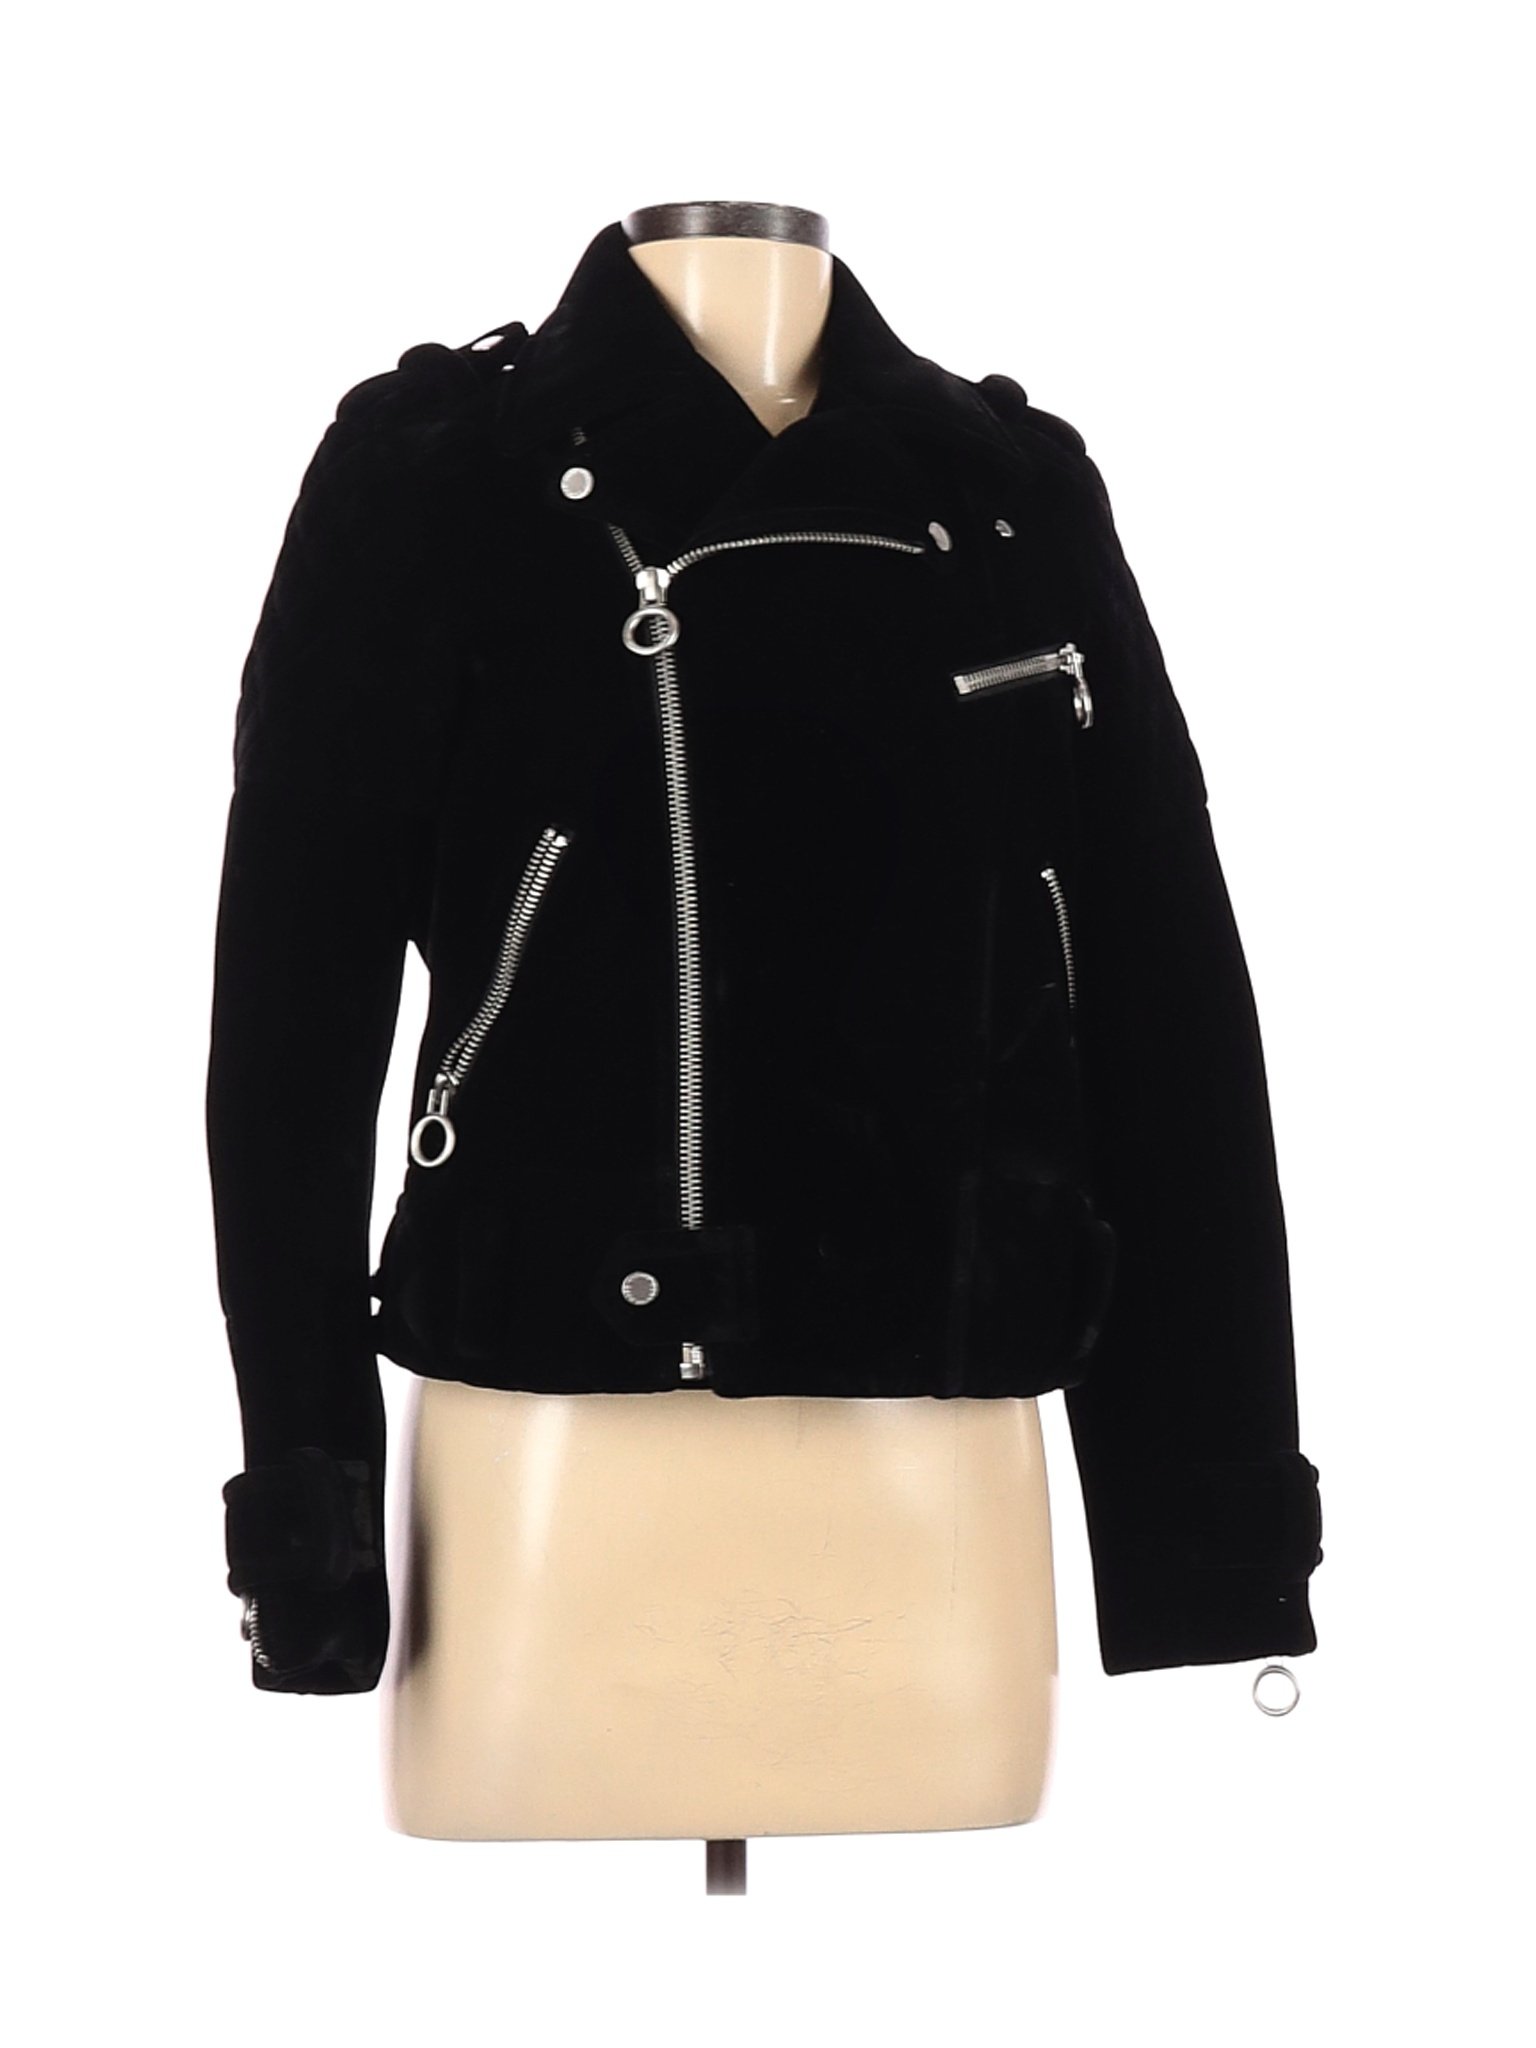 Marc by Marc Jacobs Women Black Jacket S | eBay